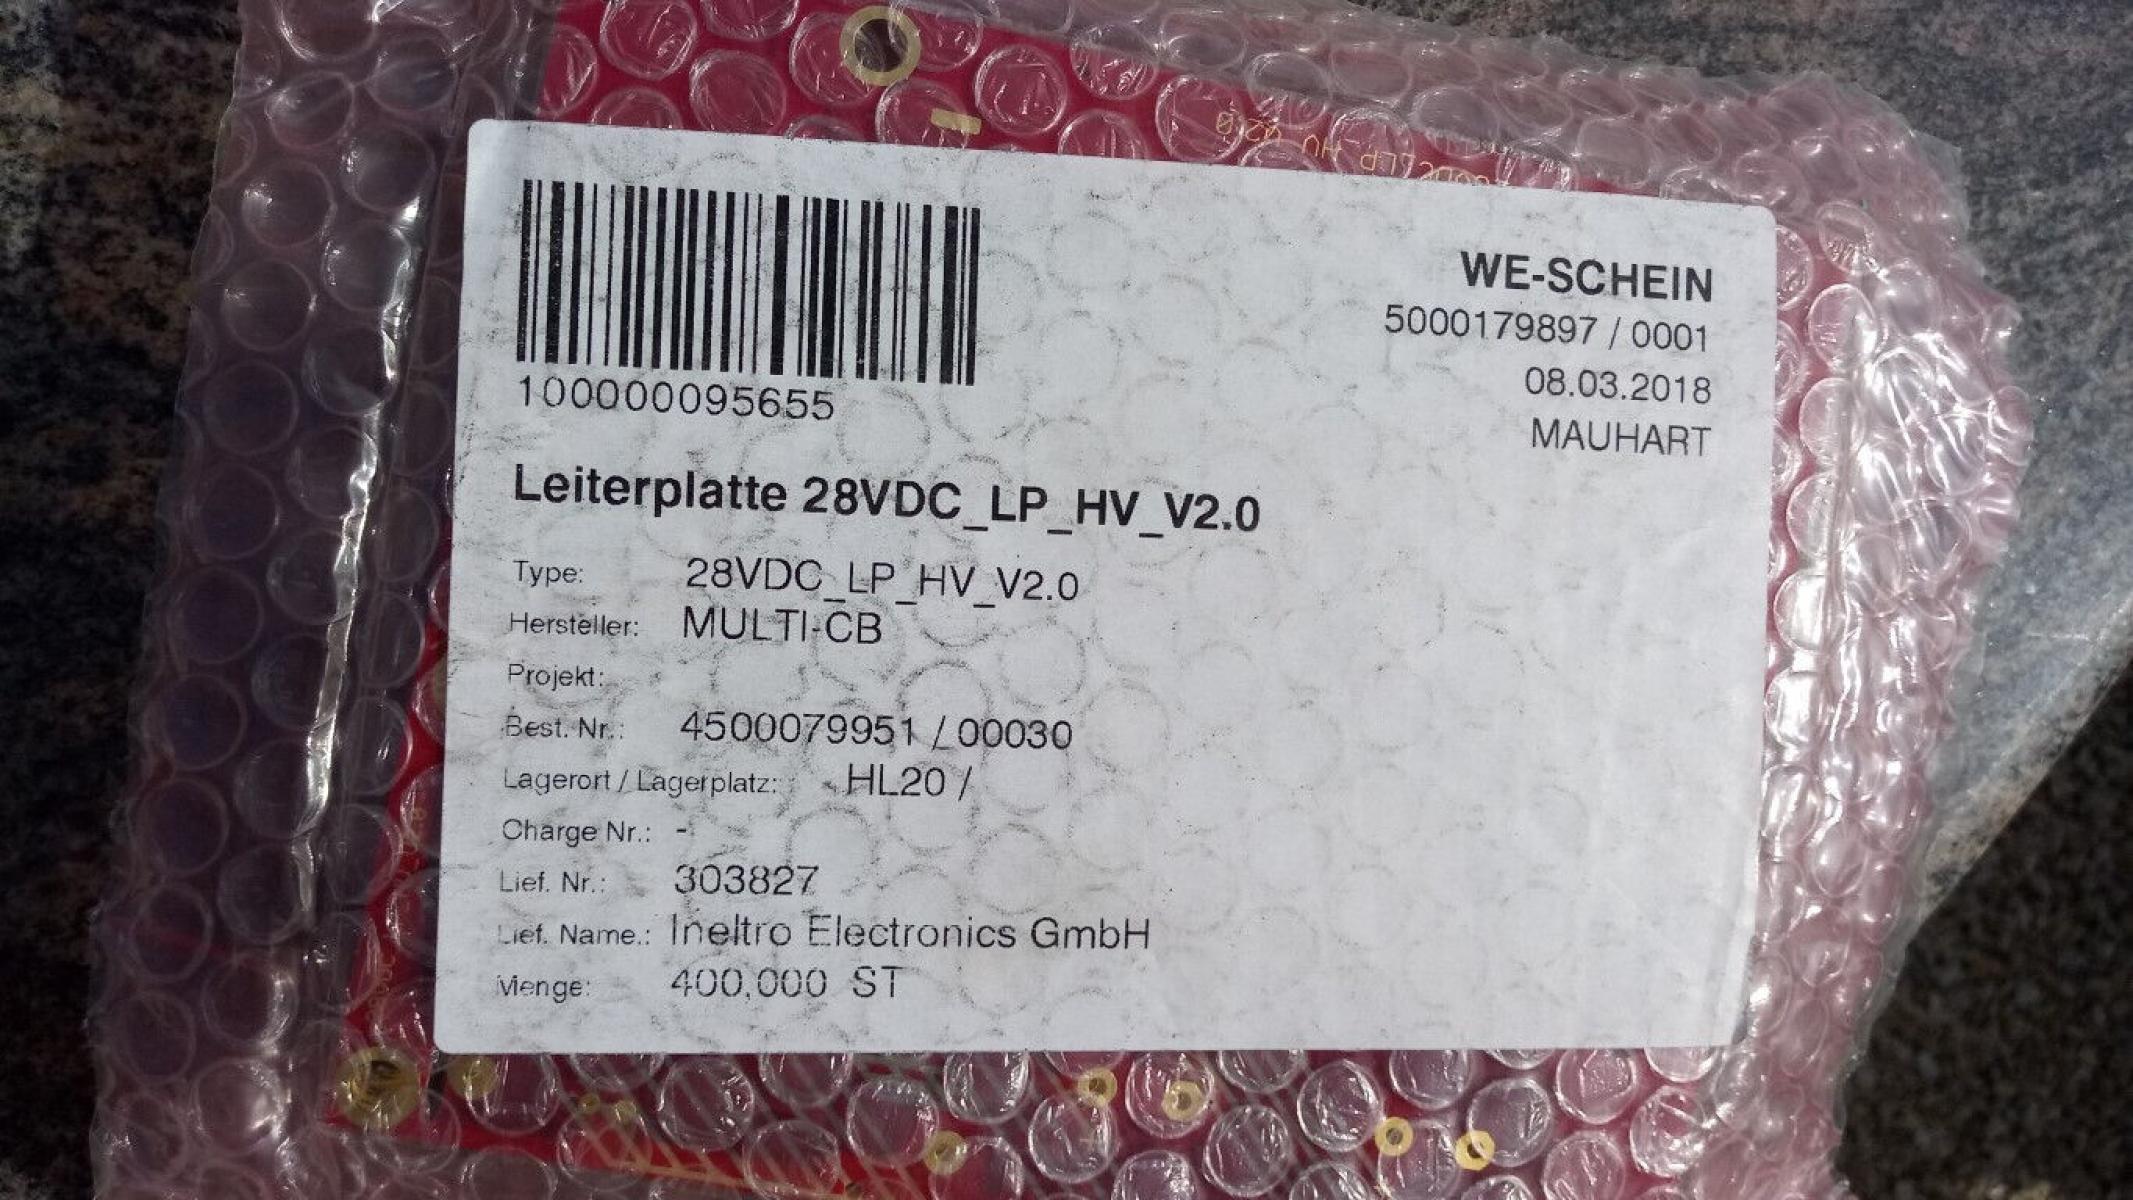 25 x Leiterplatten 28VDC LP HV V2.0, € 29,- (8130 Frohnleiten)